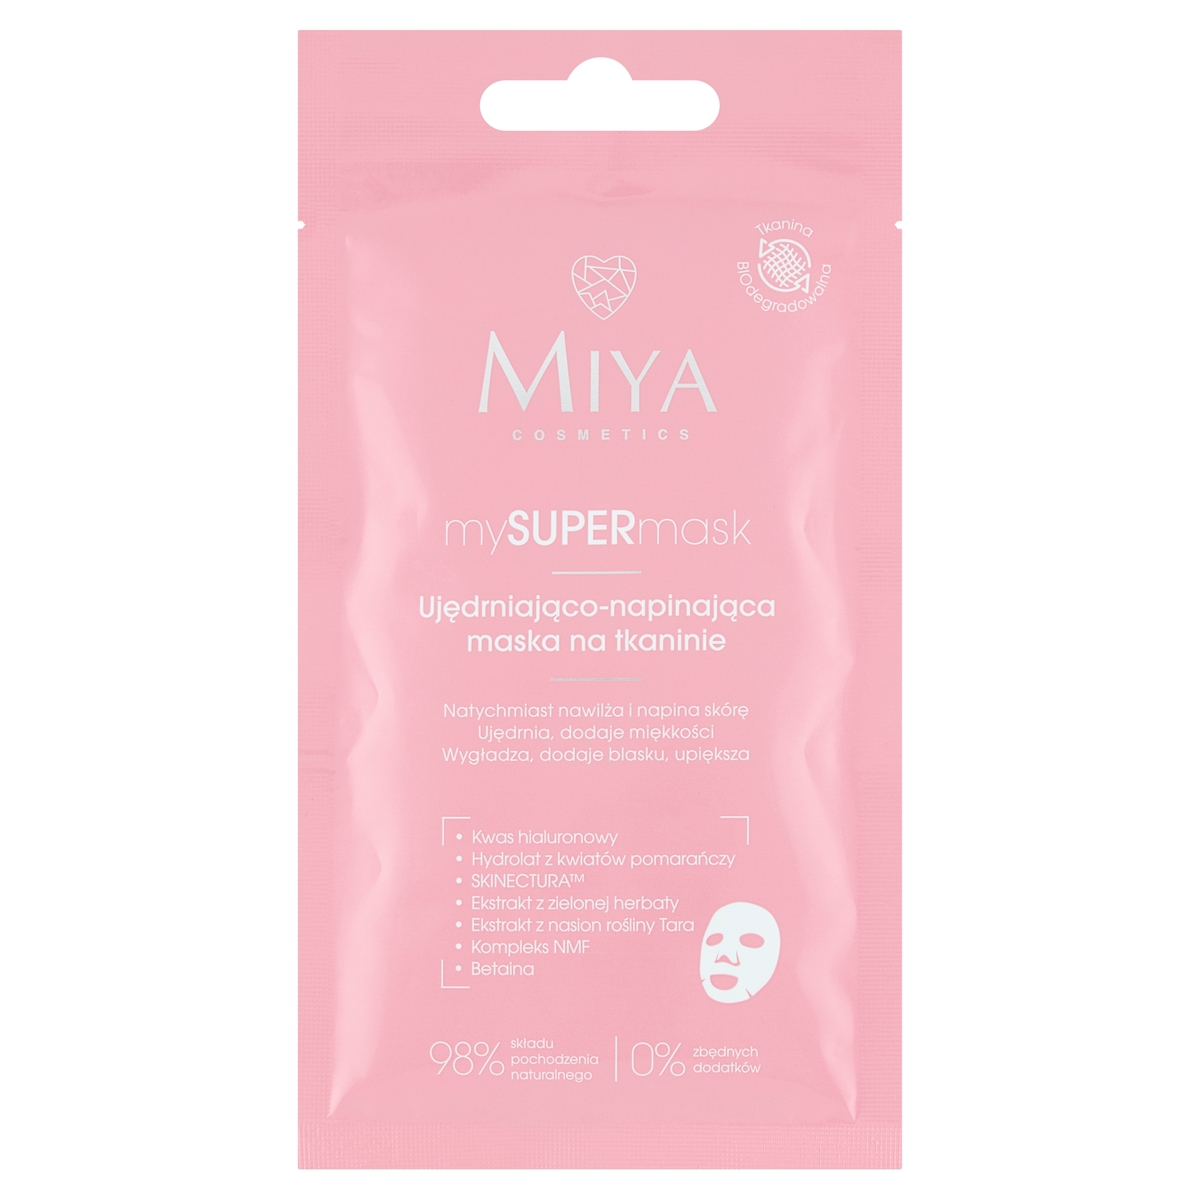 Miya Cosmetics Miya mySUPERmask - Ujędrniająco-napinająca maska na tkaninie 1szt (maski)